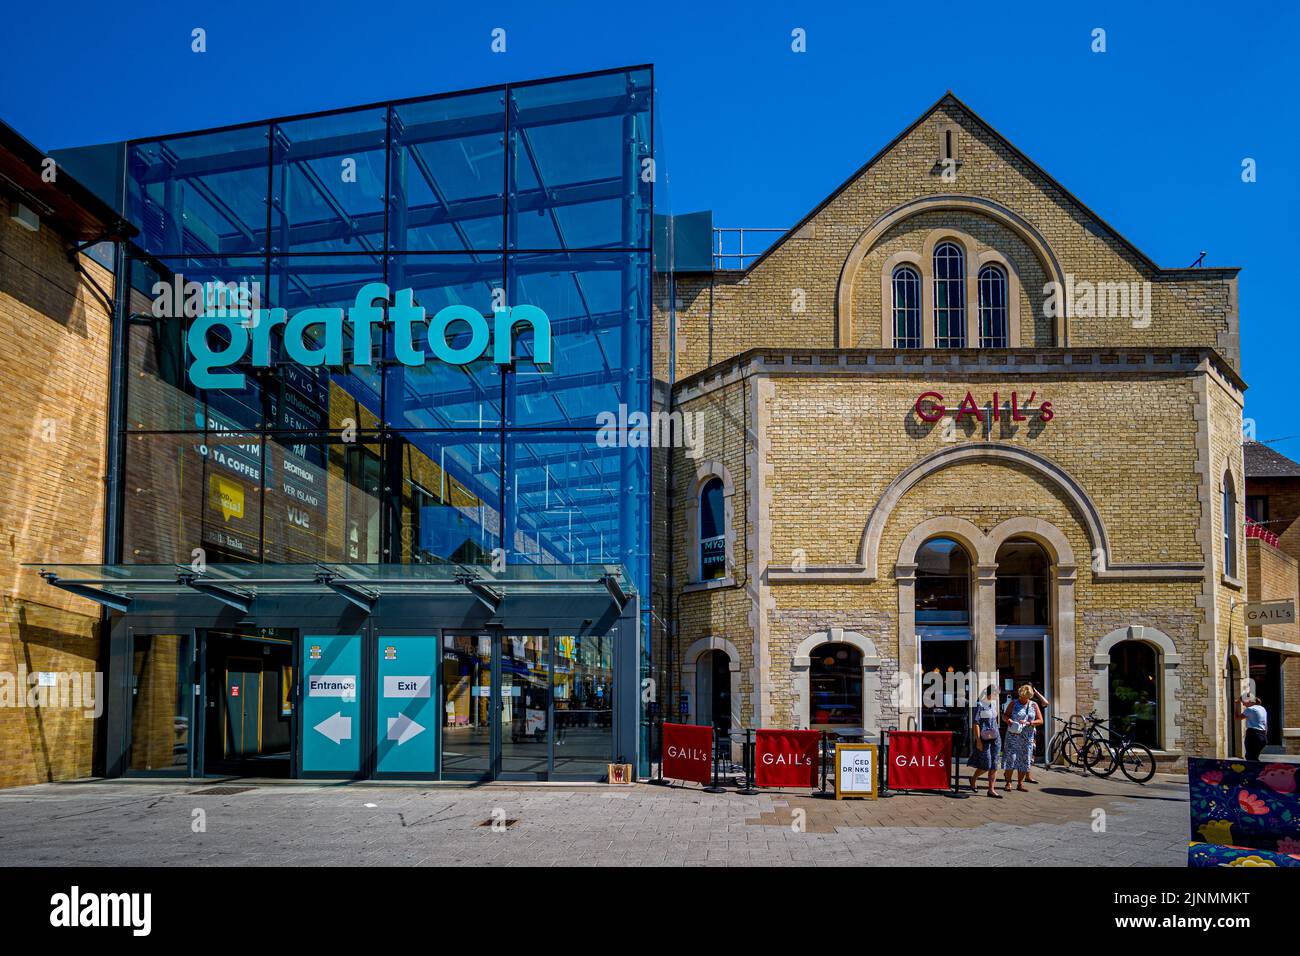 Le Grafton Centre couvrait le centre commercial Cambridge, Royaume-Uni. Initialement développé au début des années 1980, il a été considérablement rénové en 2017. Banque D'Images